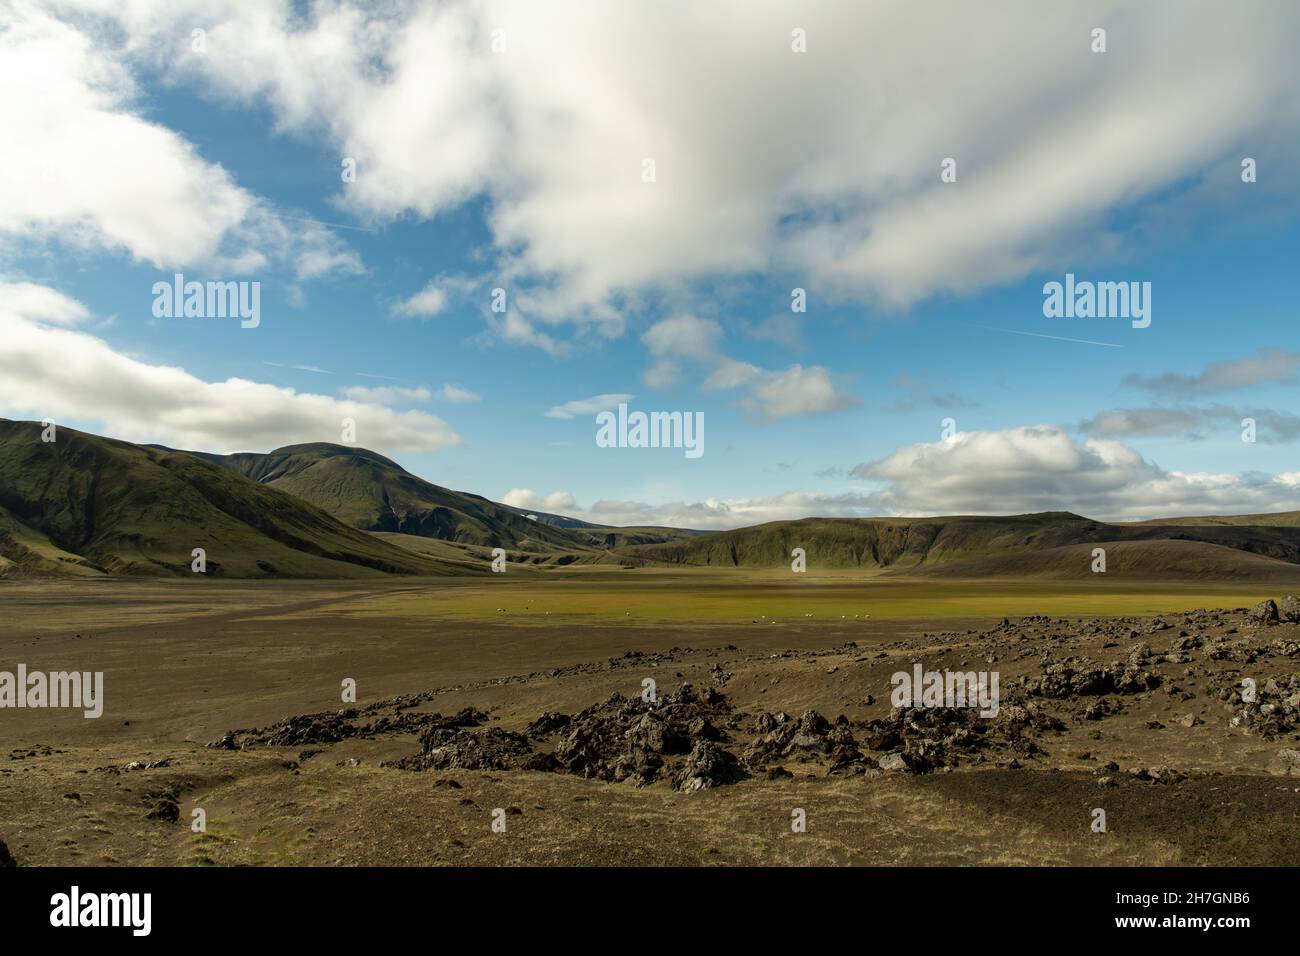 Vista panoramica ad alto angolo sull'altopiano vulcanico vicino al vulcano Katla in Islanda con montagne sullo sfondo un cielo bianco e blu nuvoloso Foto Stock